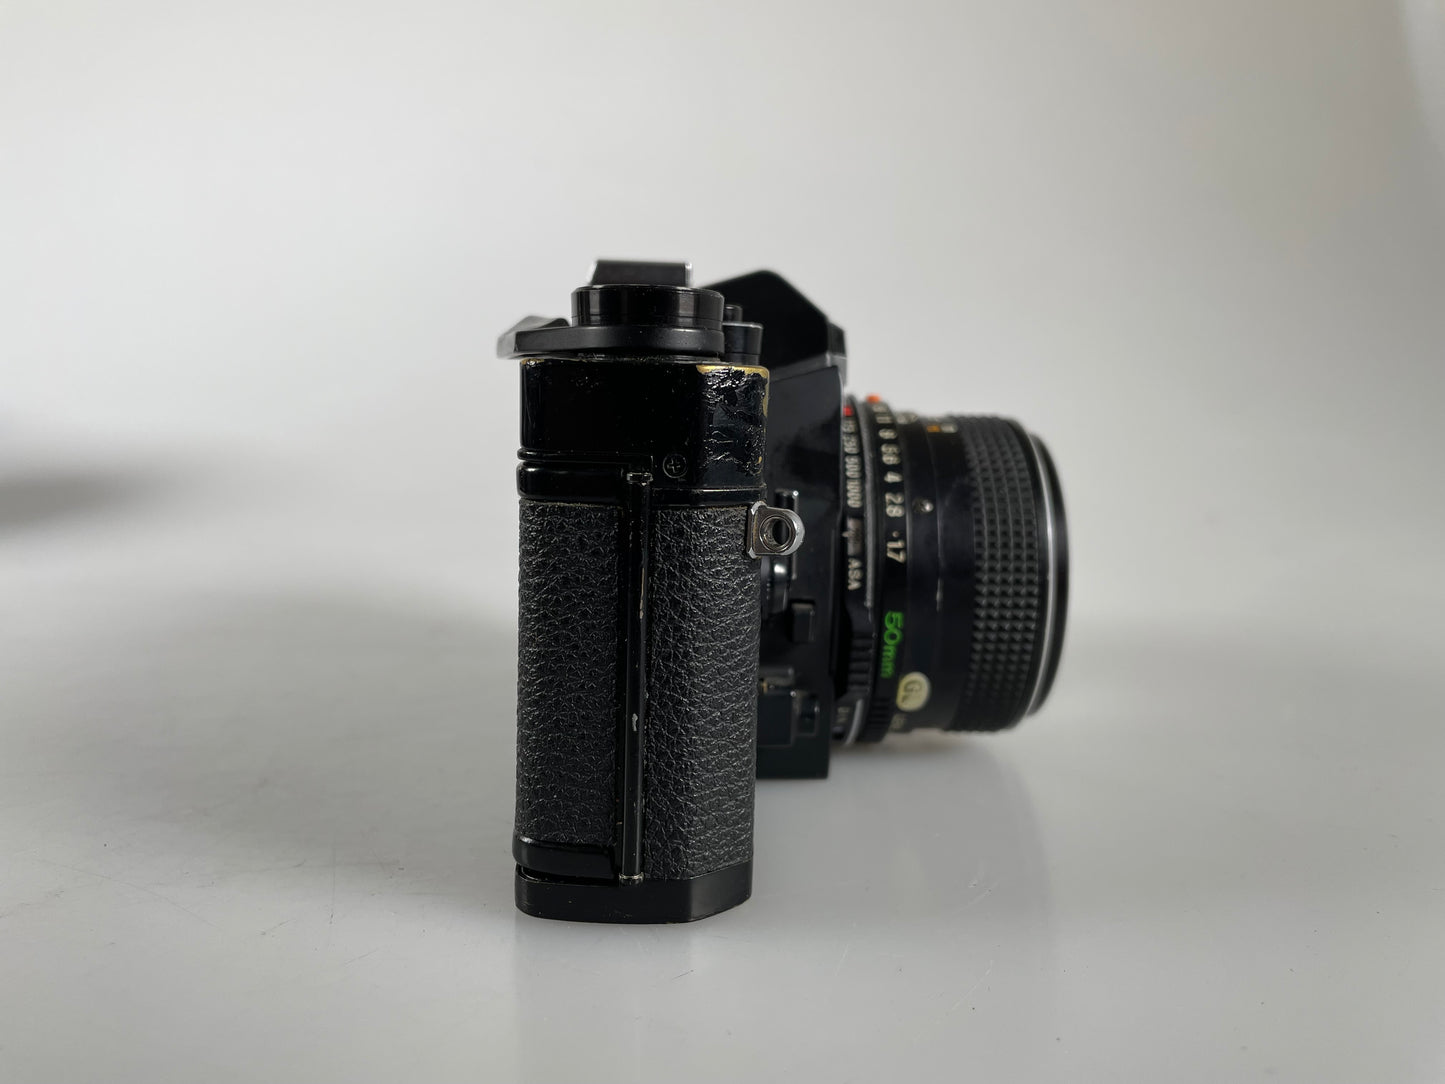 Mamiya NC1000 camera with 50mm f1.7 CS lens kit